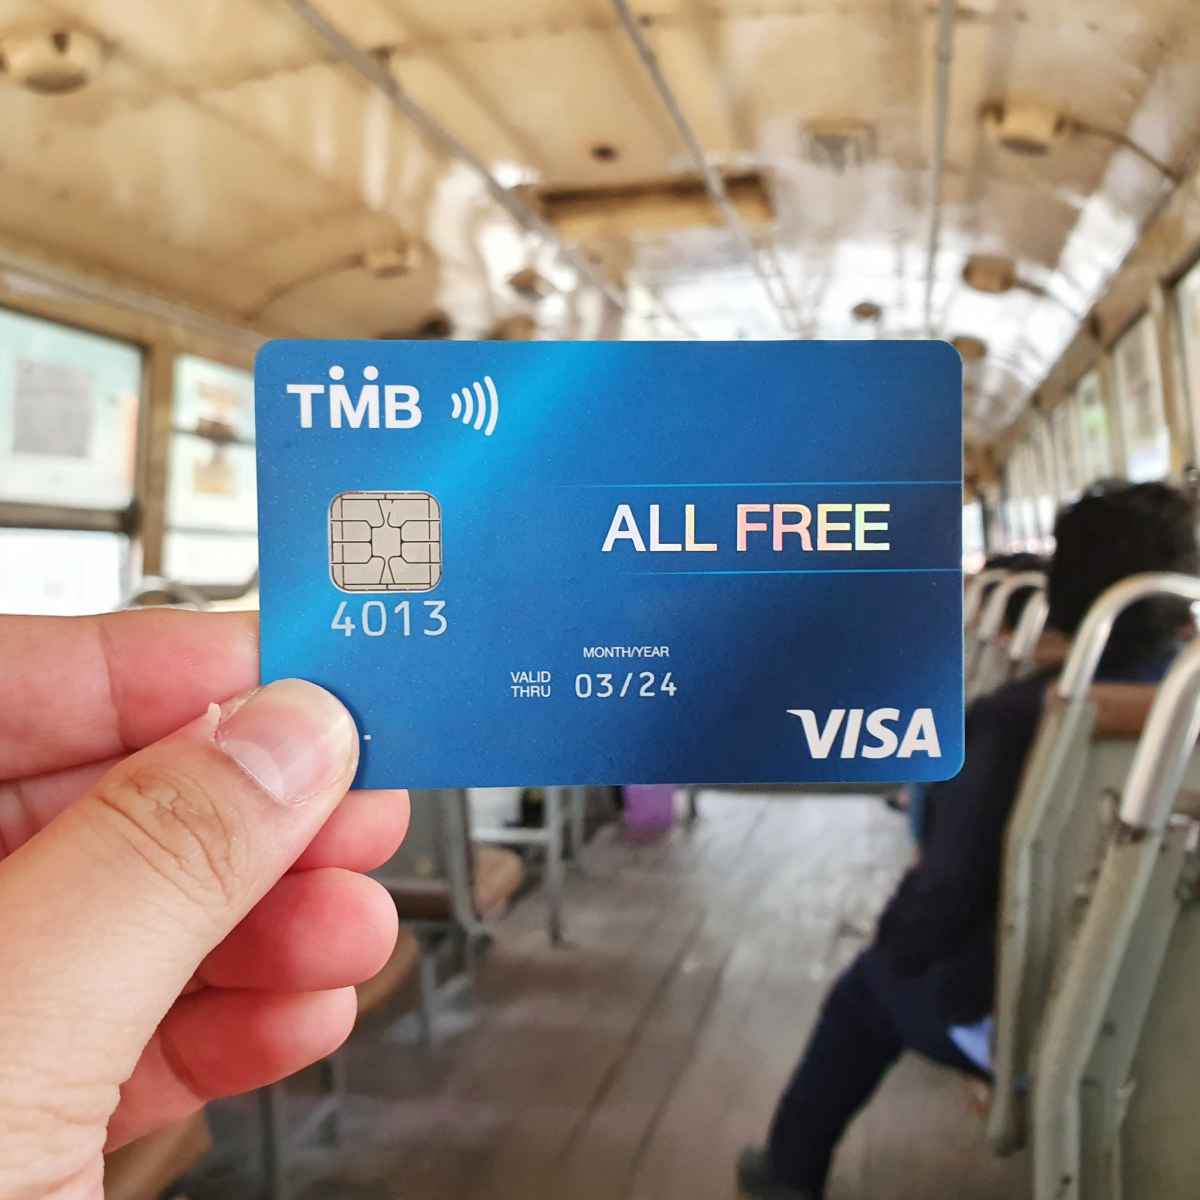 TMB All Free